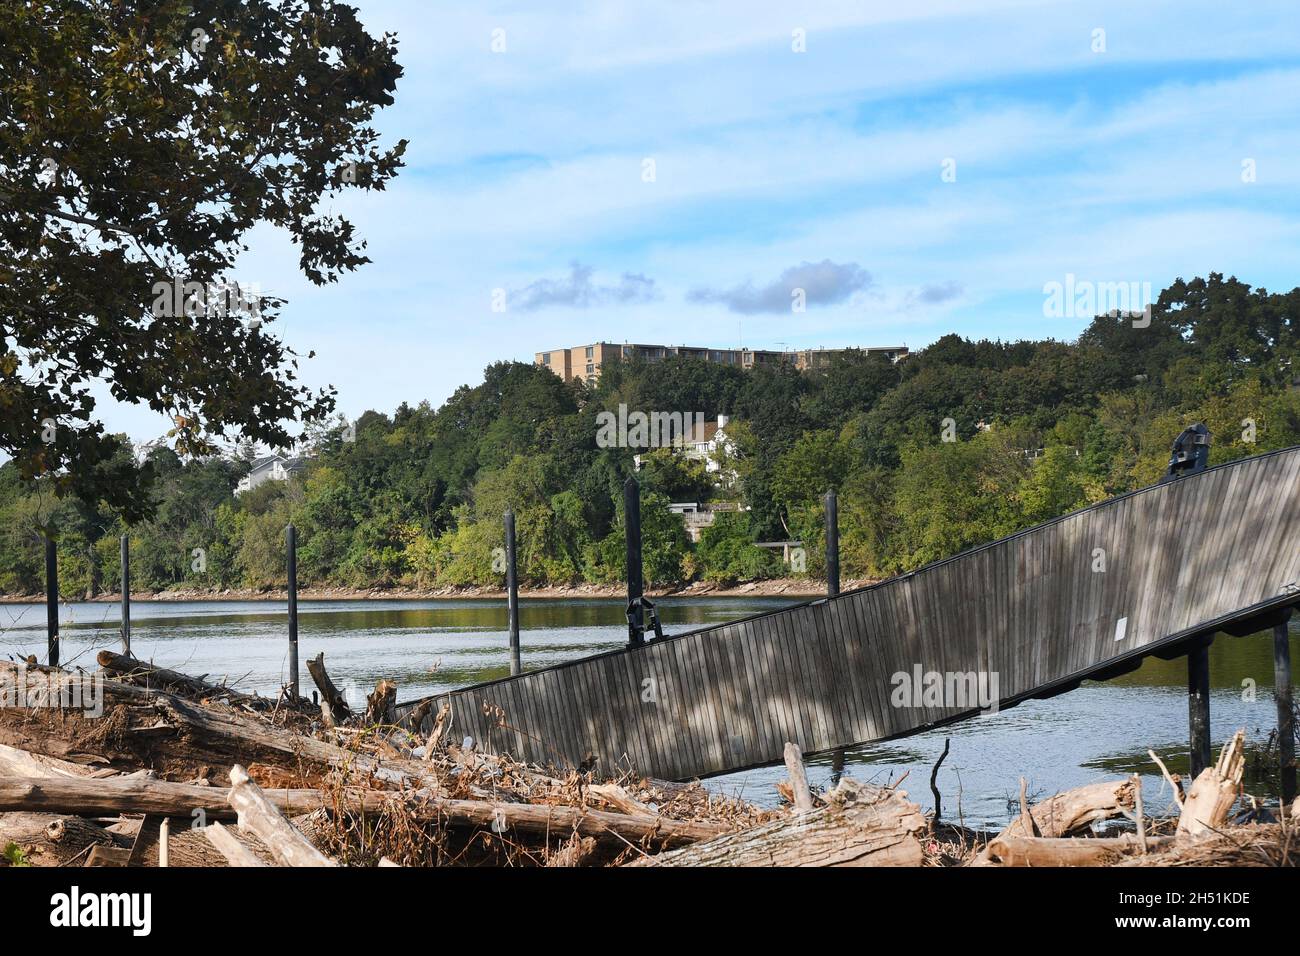 DÉLUGE : la pluie torrentielle et historique des restes de l'ouragan Ida provoque des inondations massives de la rivière Raritan laissant le parc Boyd en ruines. Banque D'Images